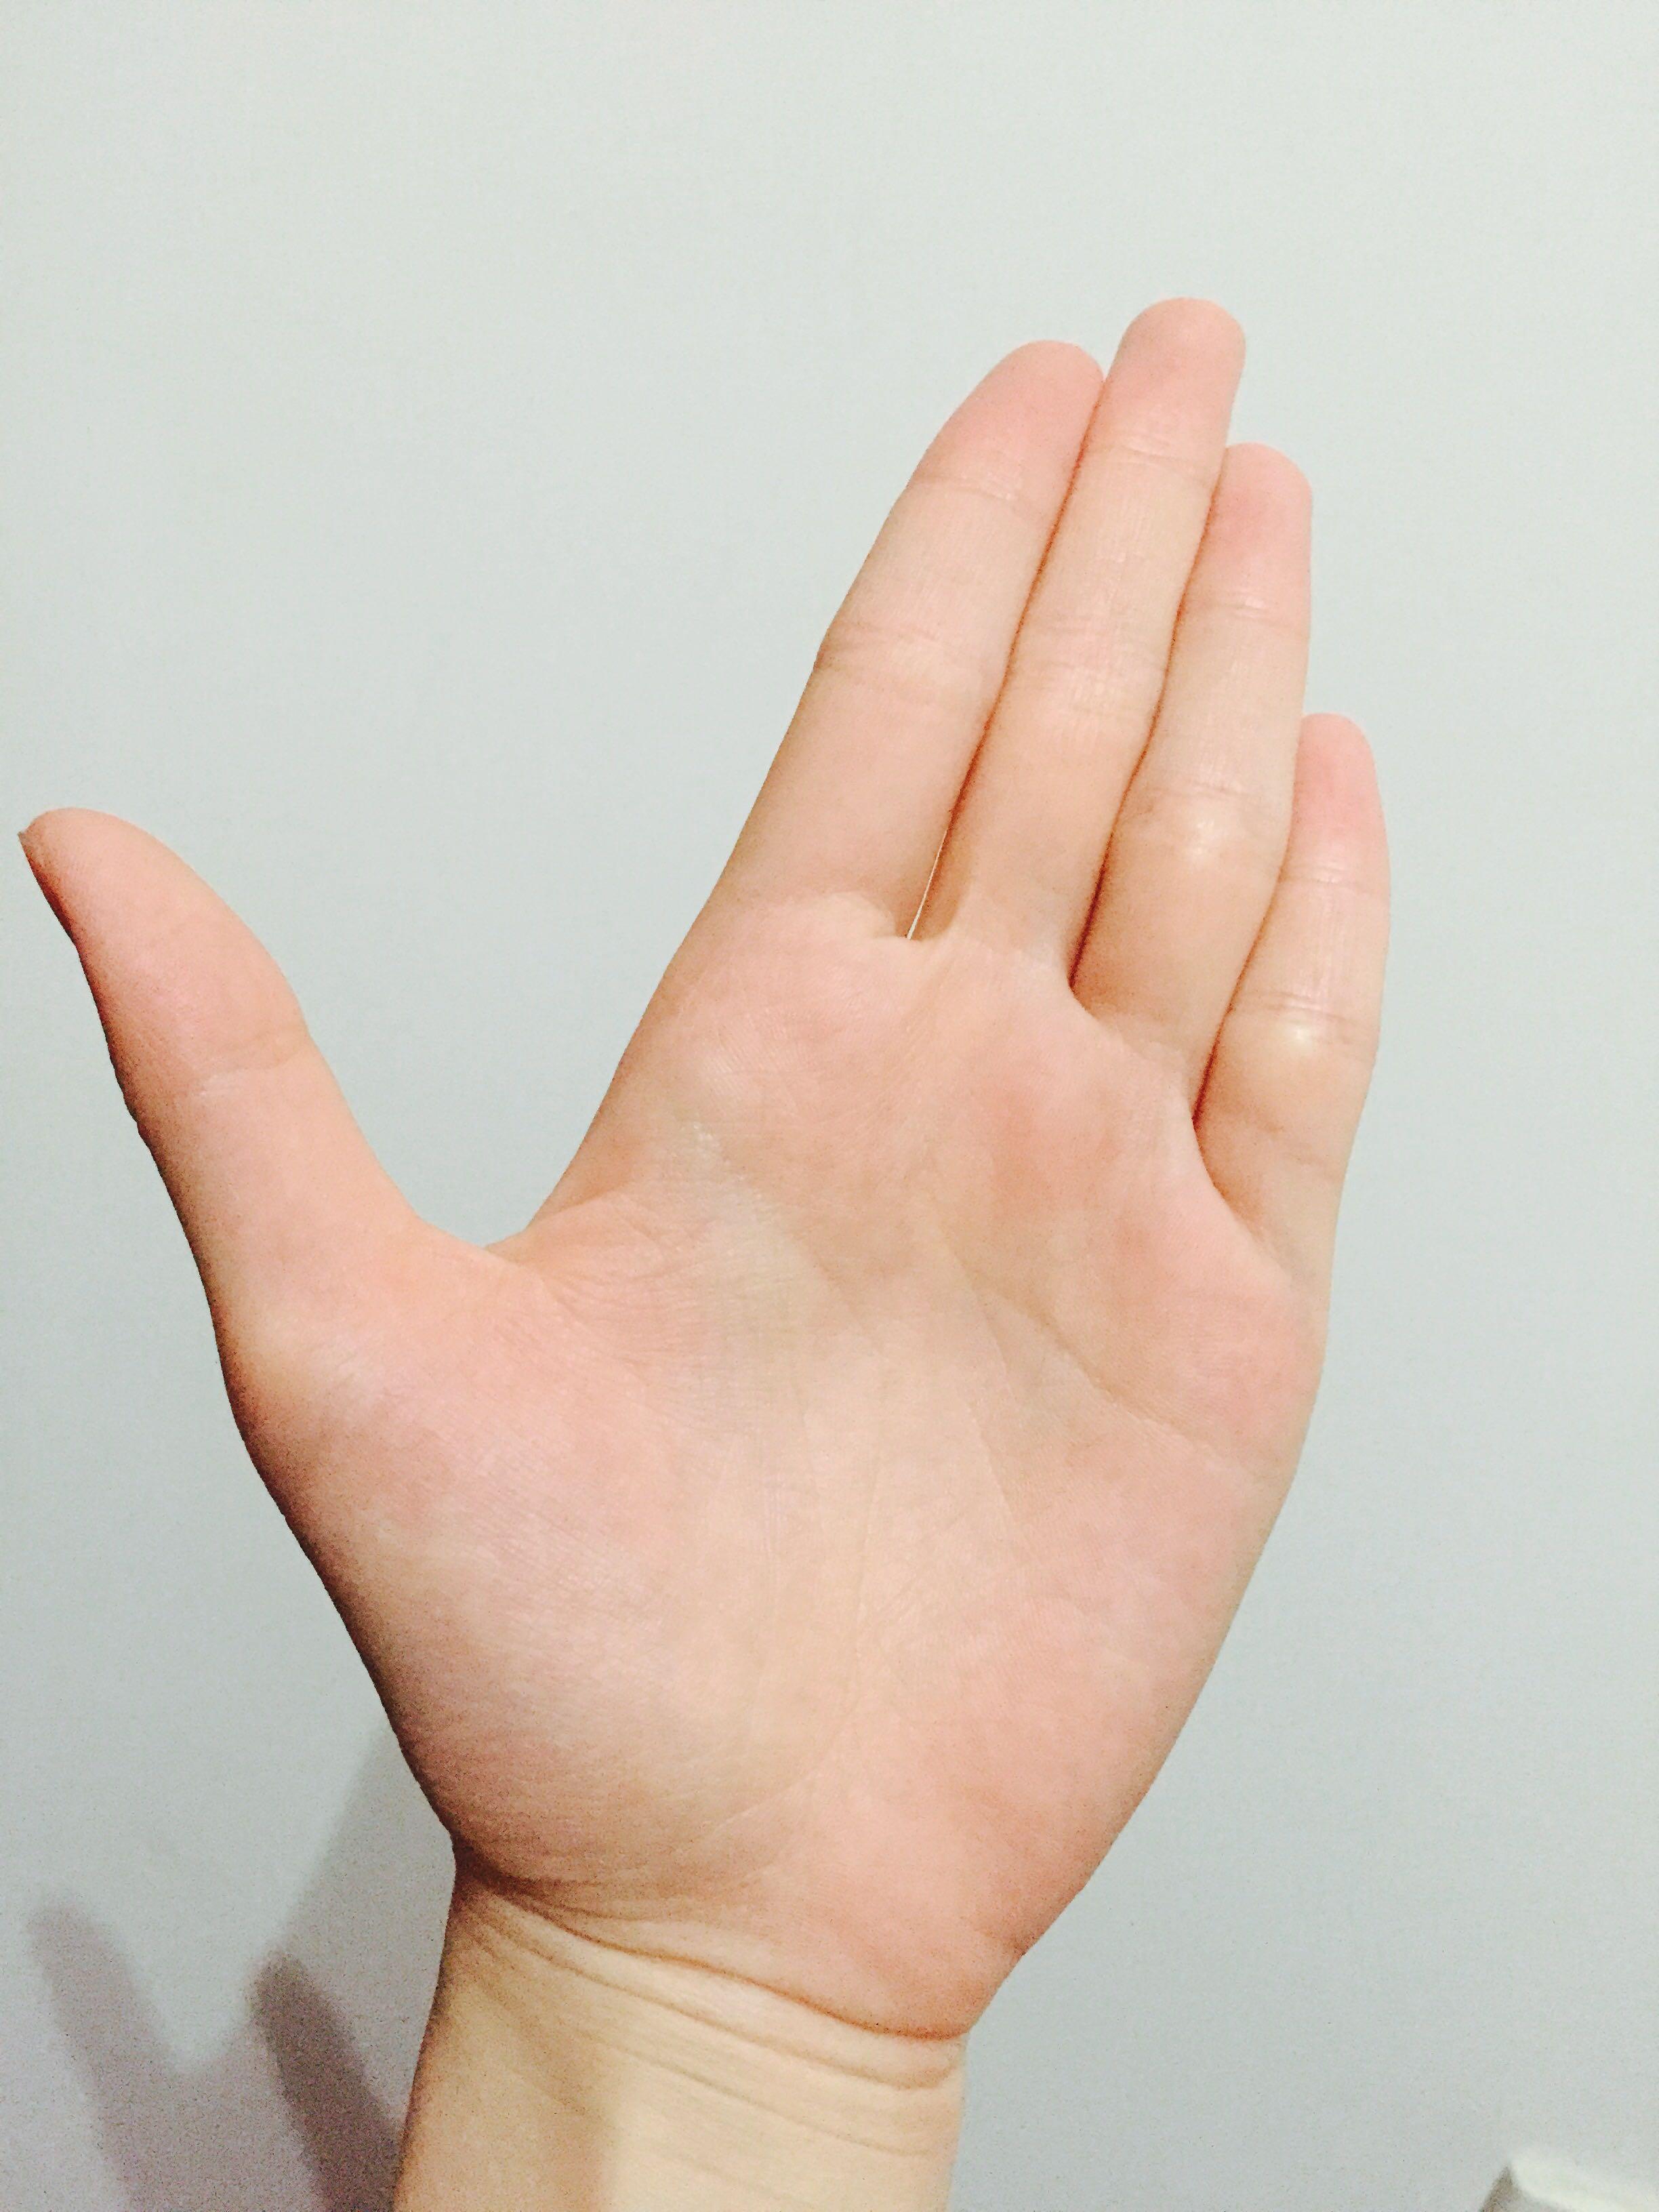 女生,左右手小指均有三条纹理线,看上去呈四节状,实质为正常手指